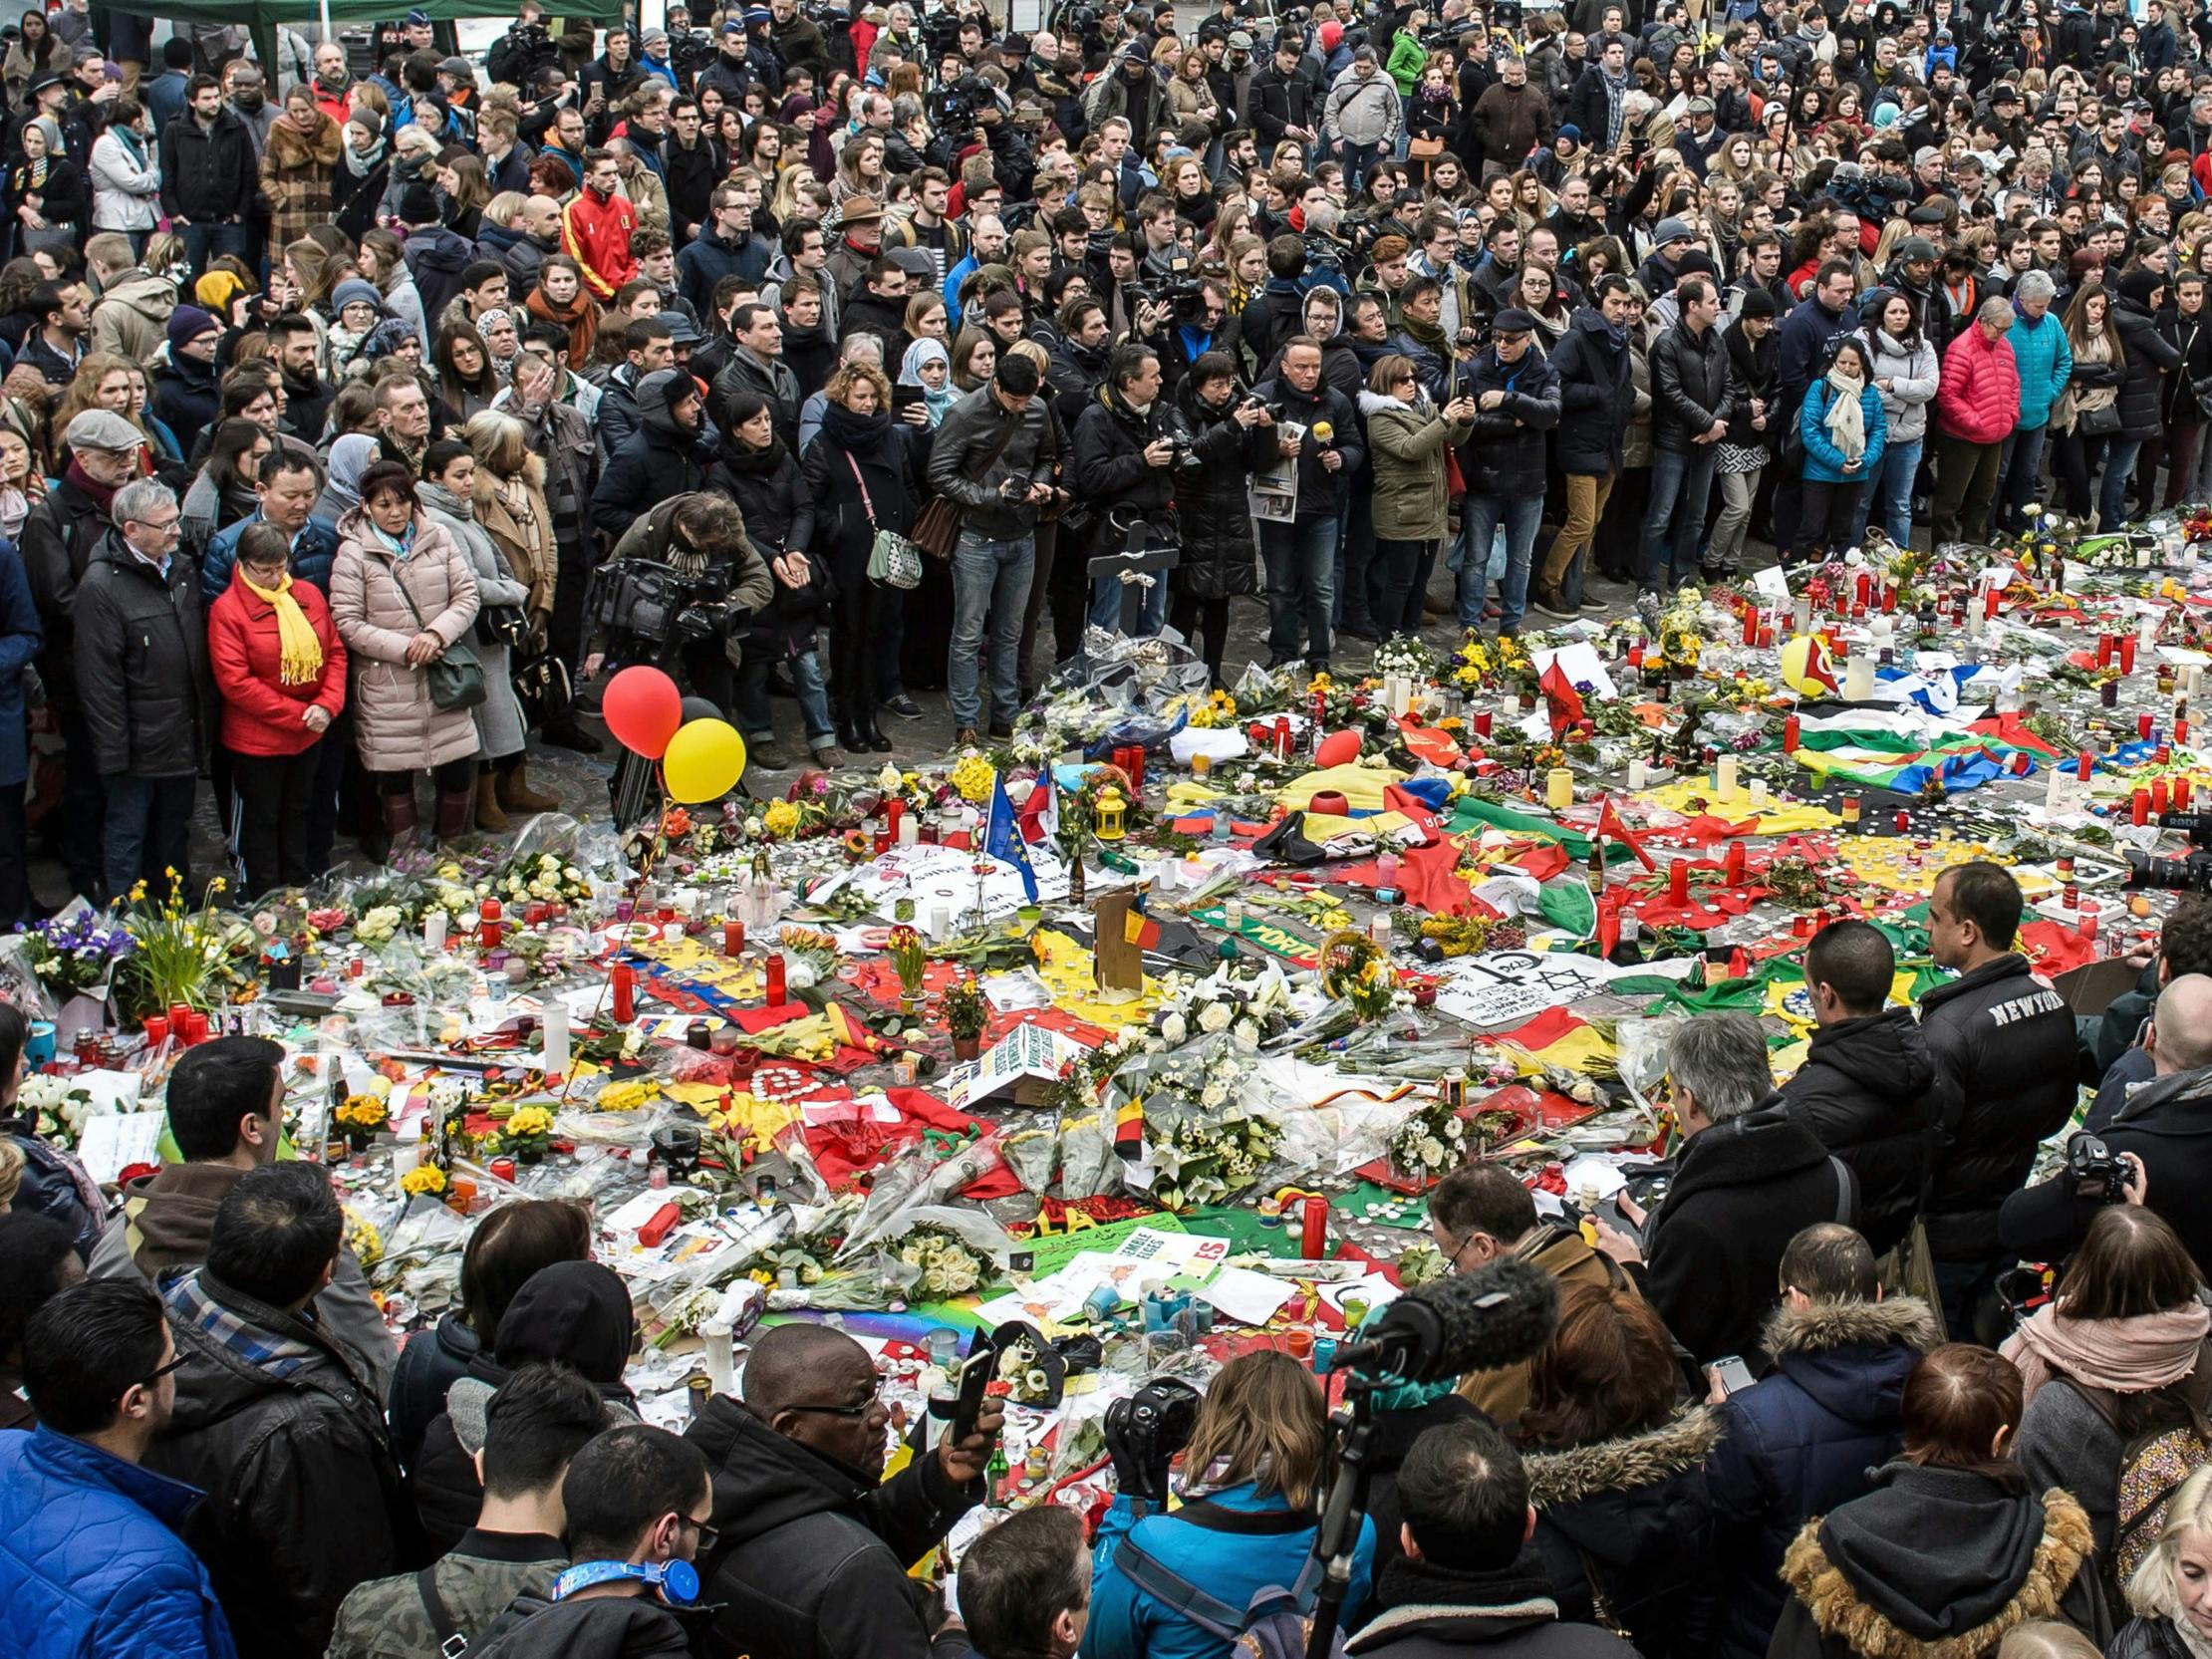 Tusinder af mennesker samledes til en mindehøjtidelighed for at ære de mange dræbte og sårede for de tre bombeeksplosioner i Bruxelles den 22. marts 2016.